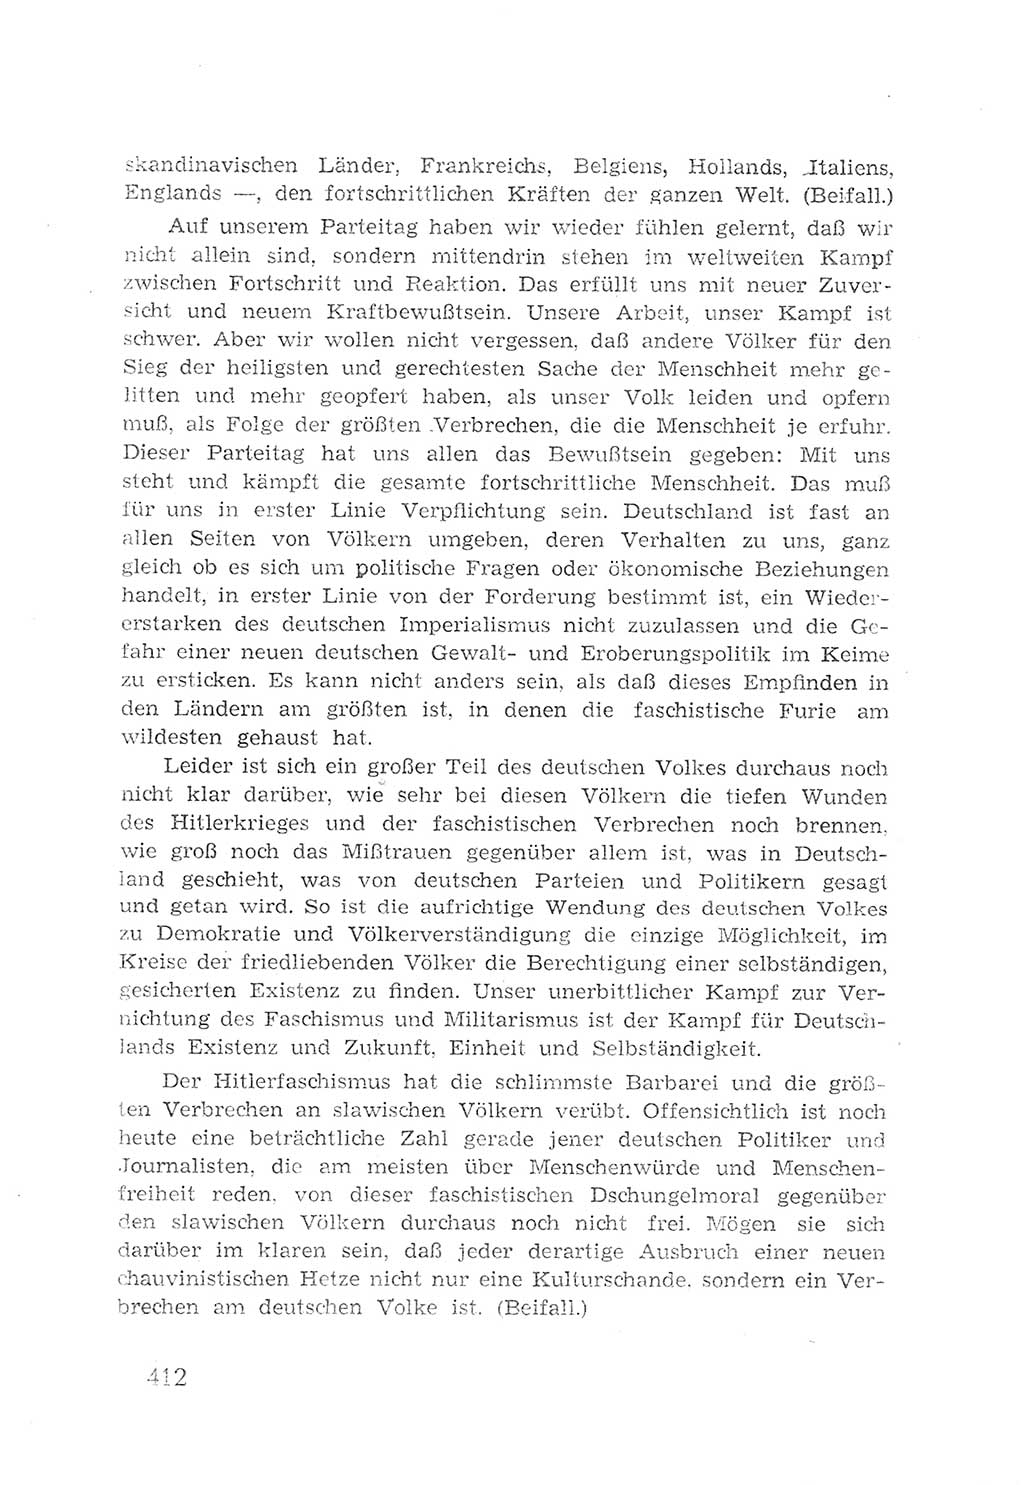 Protokoll der Verhandlungen des 2. Parteitages der Sozialistischen Einheitspartei Deutschlands (SED) [Sowjetische Besatzungszone (SBZ) Deutschlands] 1947, Seite 412 (Prot. Verh. 2. PT SED SBZ Dtl. 1947, S. 412)